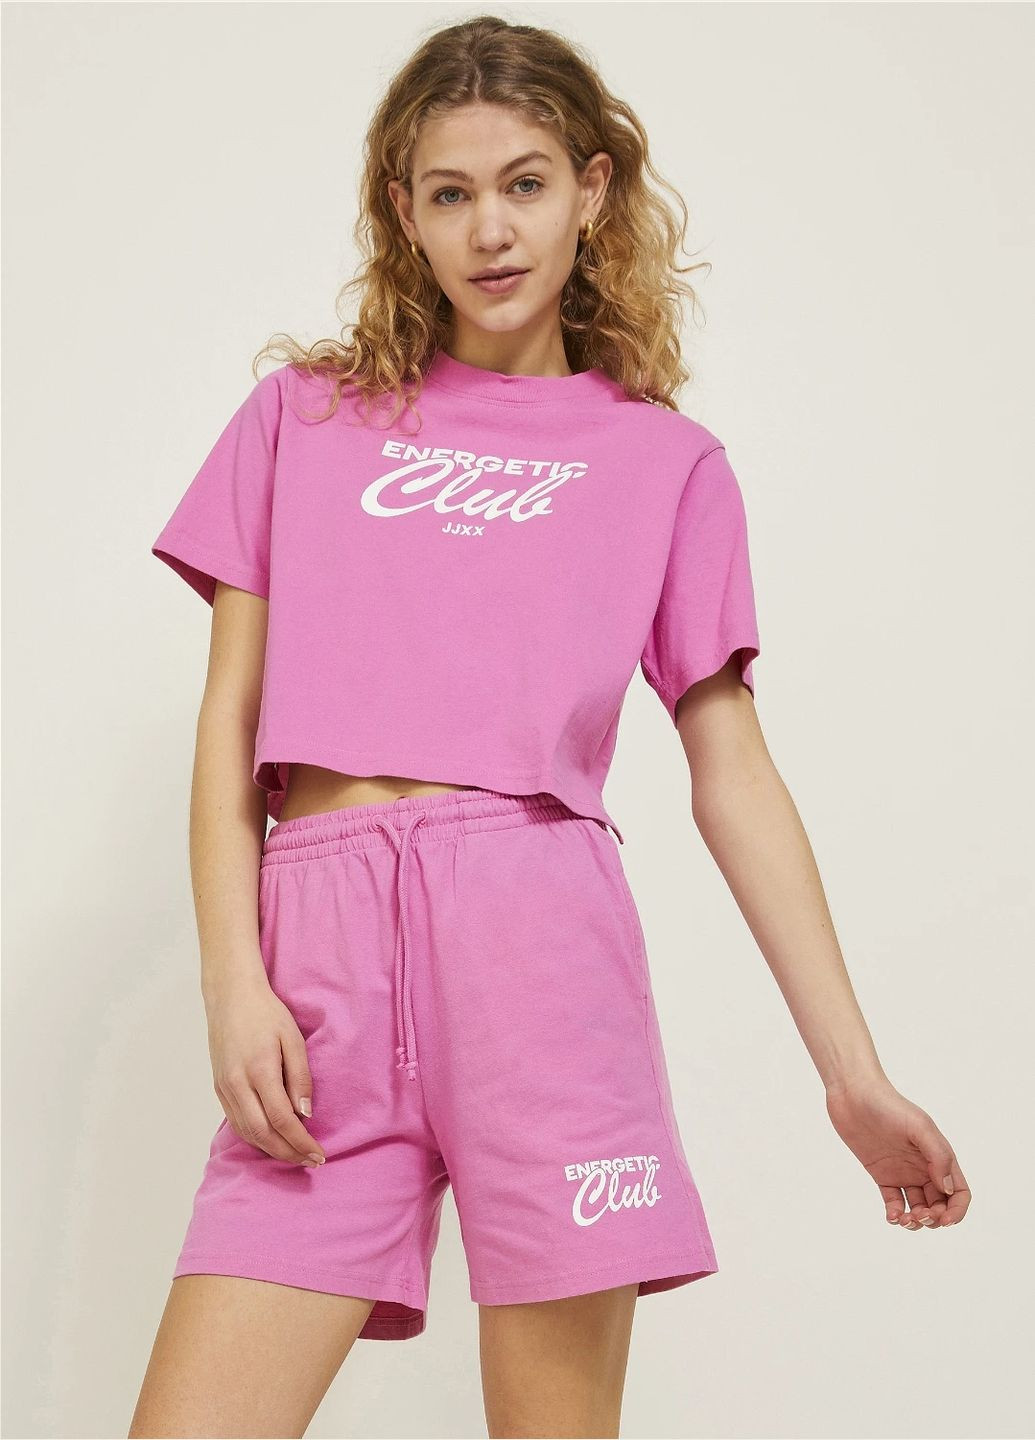 Розовая летняя футболка JJXX